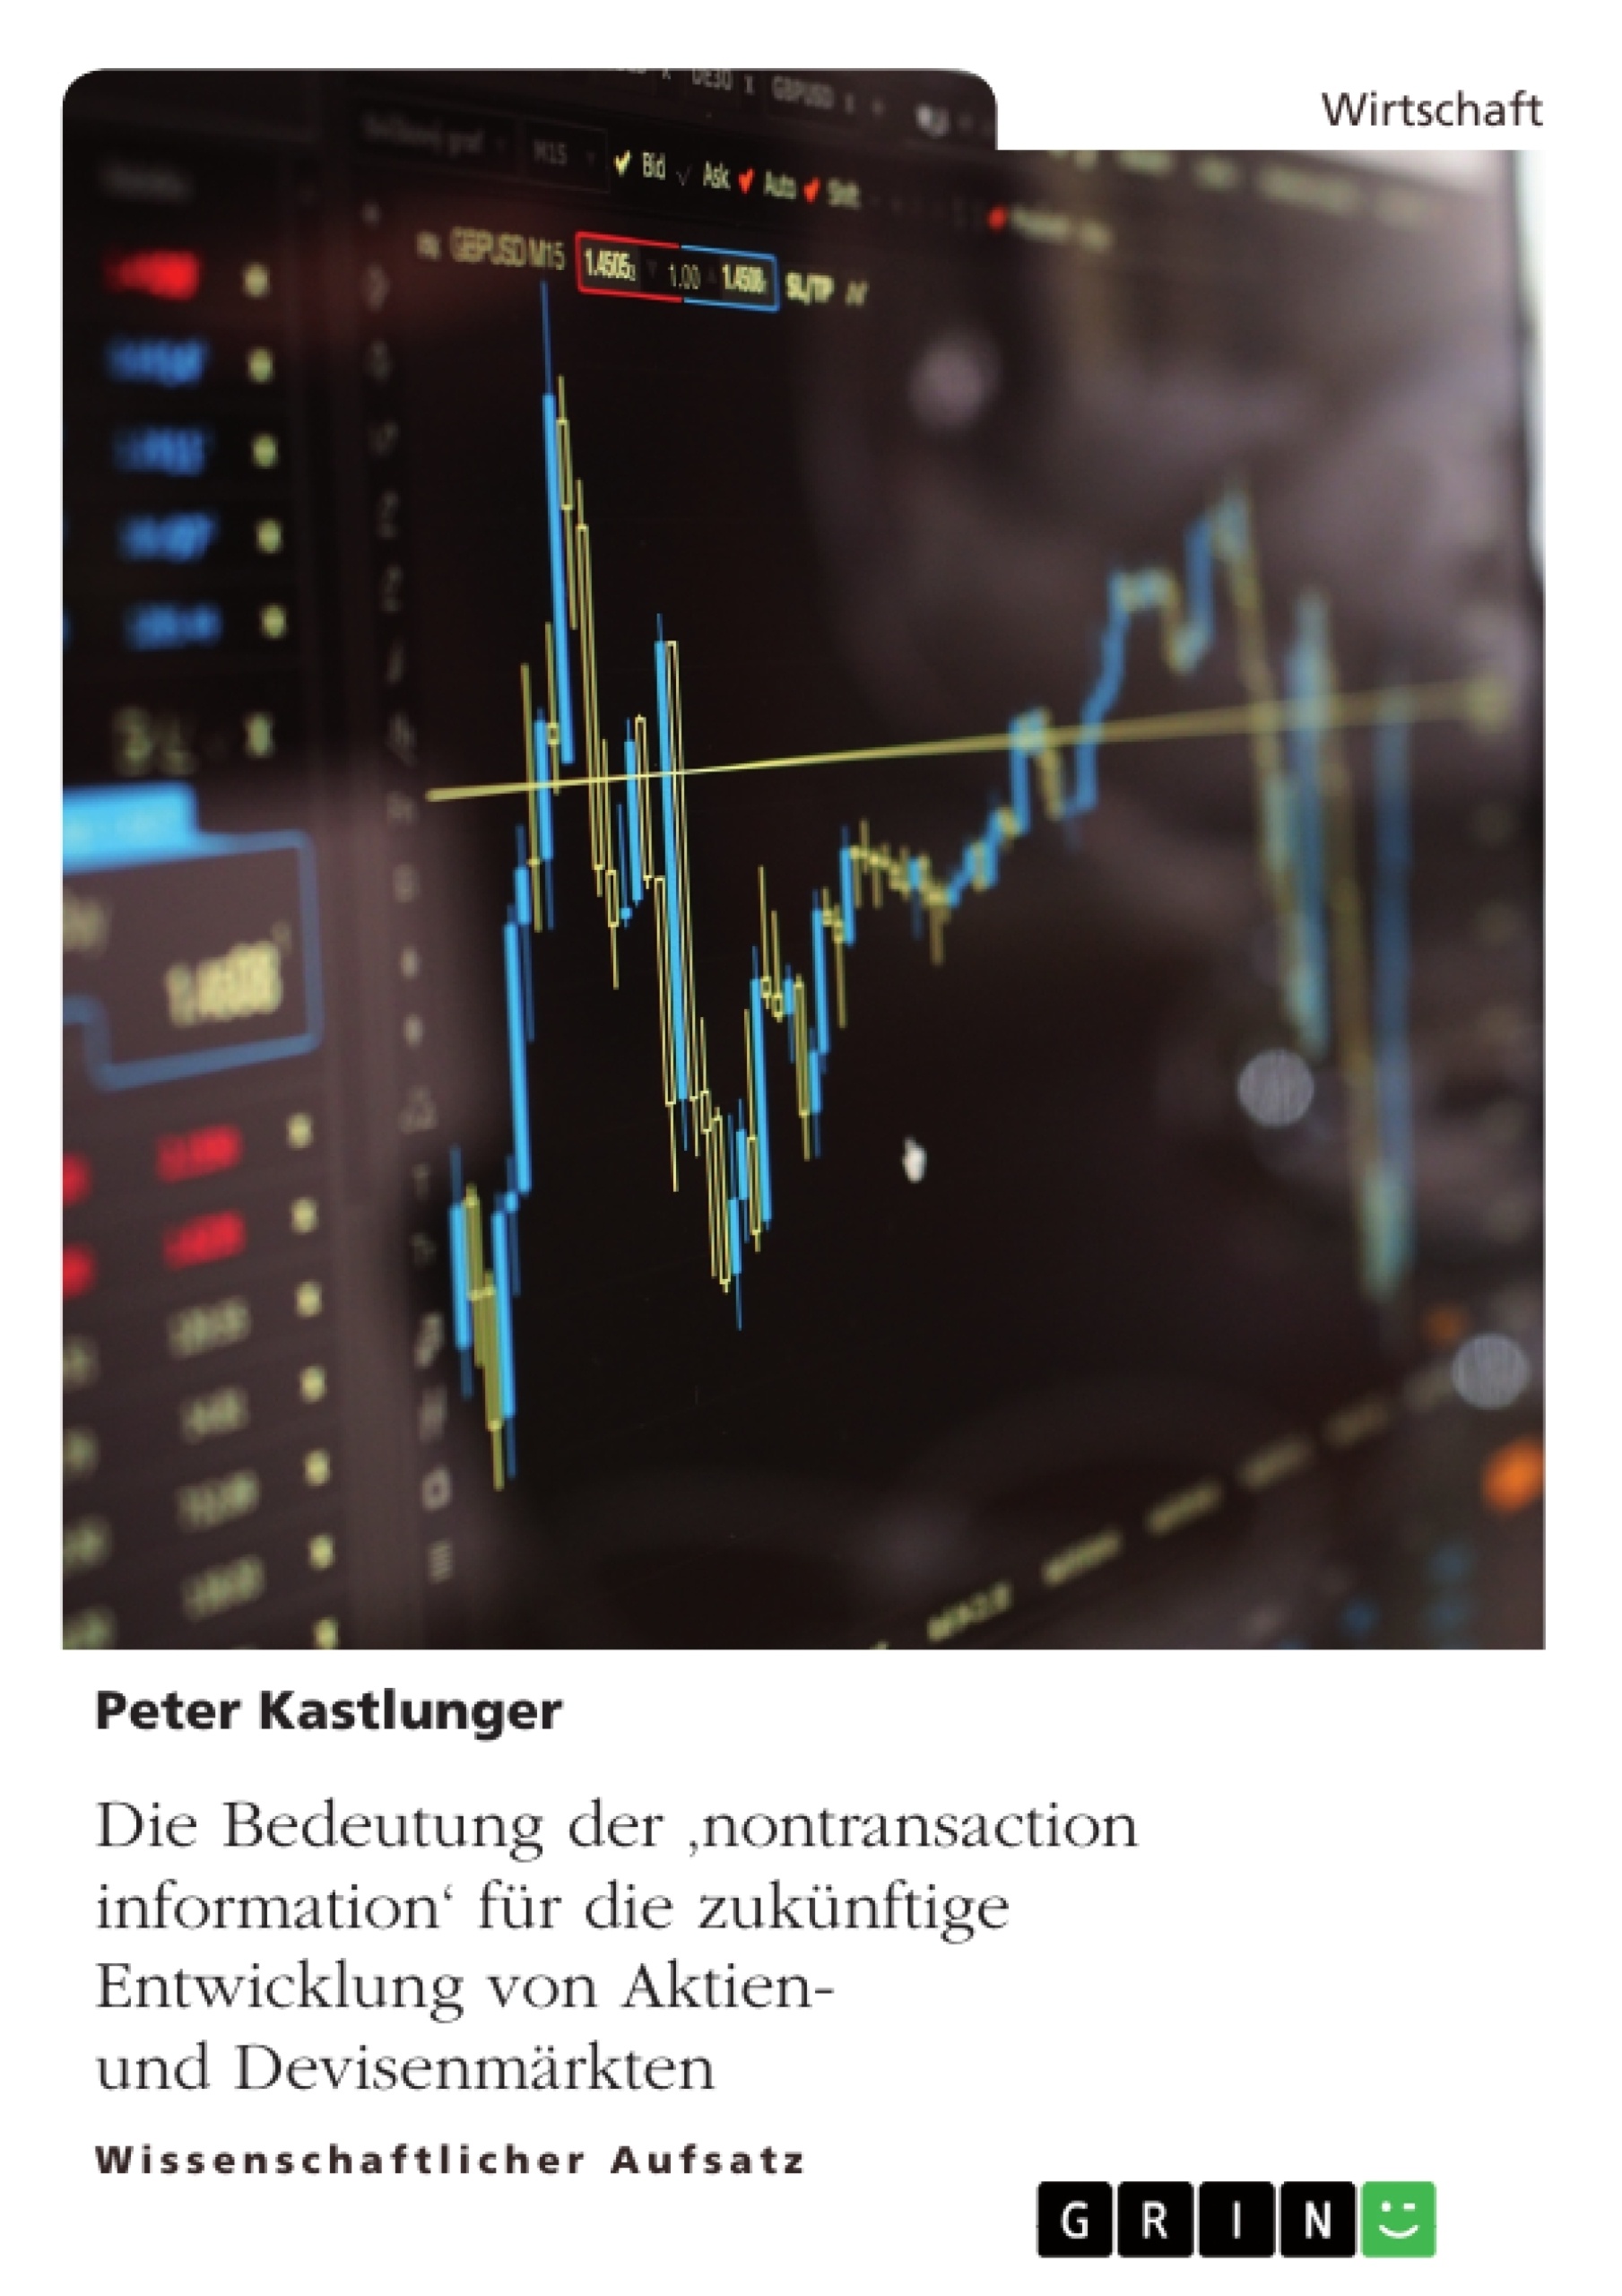 Título: Die Bedeutung der 'nontransaction information' für die zukünftige Entwicklung von Aktien- und Devisenmärkten